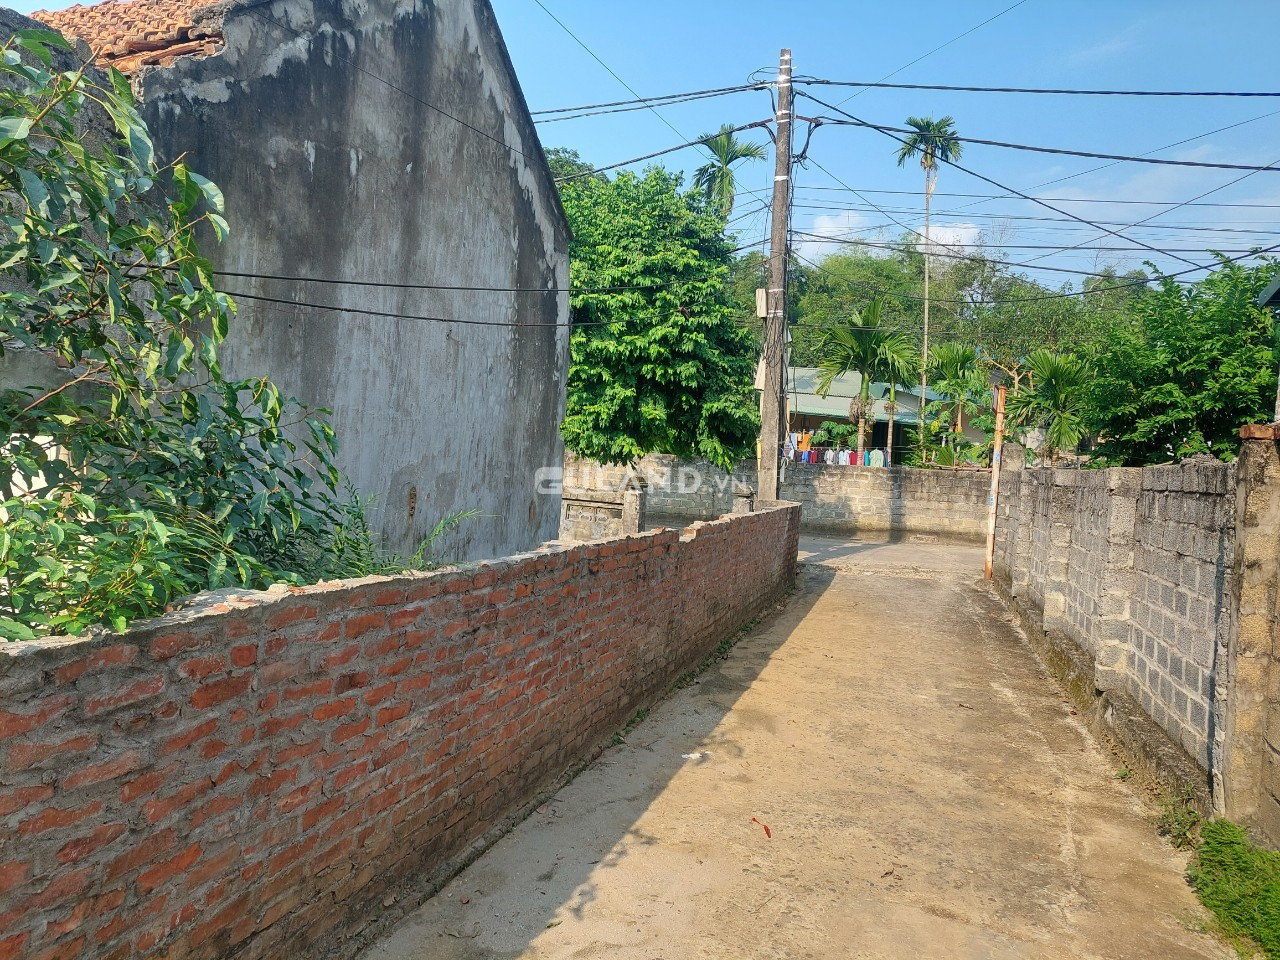 Bán nhà đất tại xóm Chùa, xã Thống Nhất, thành phố Hòa Bình